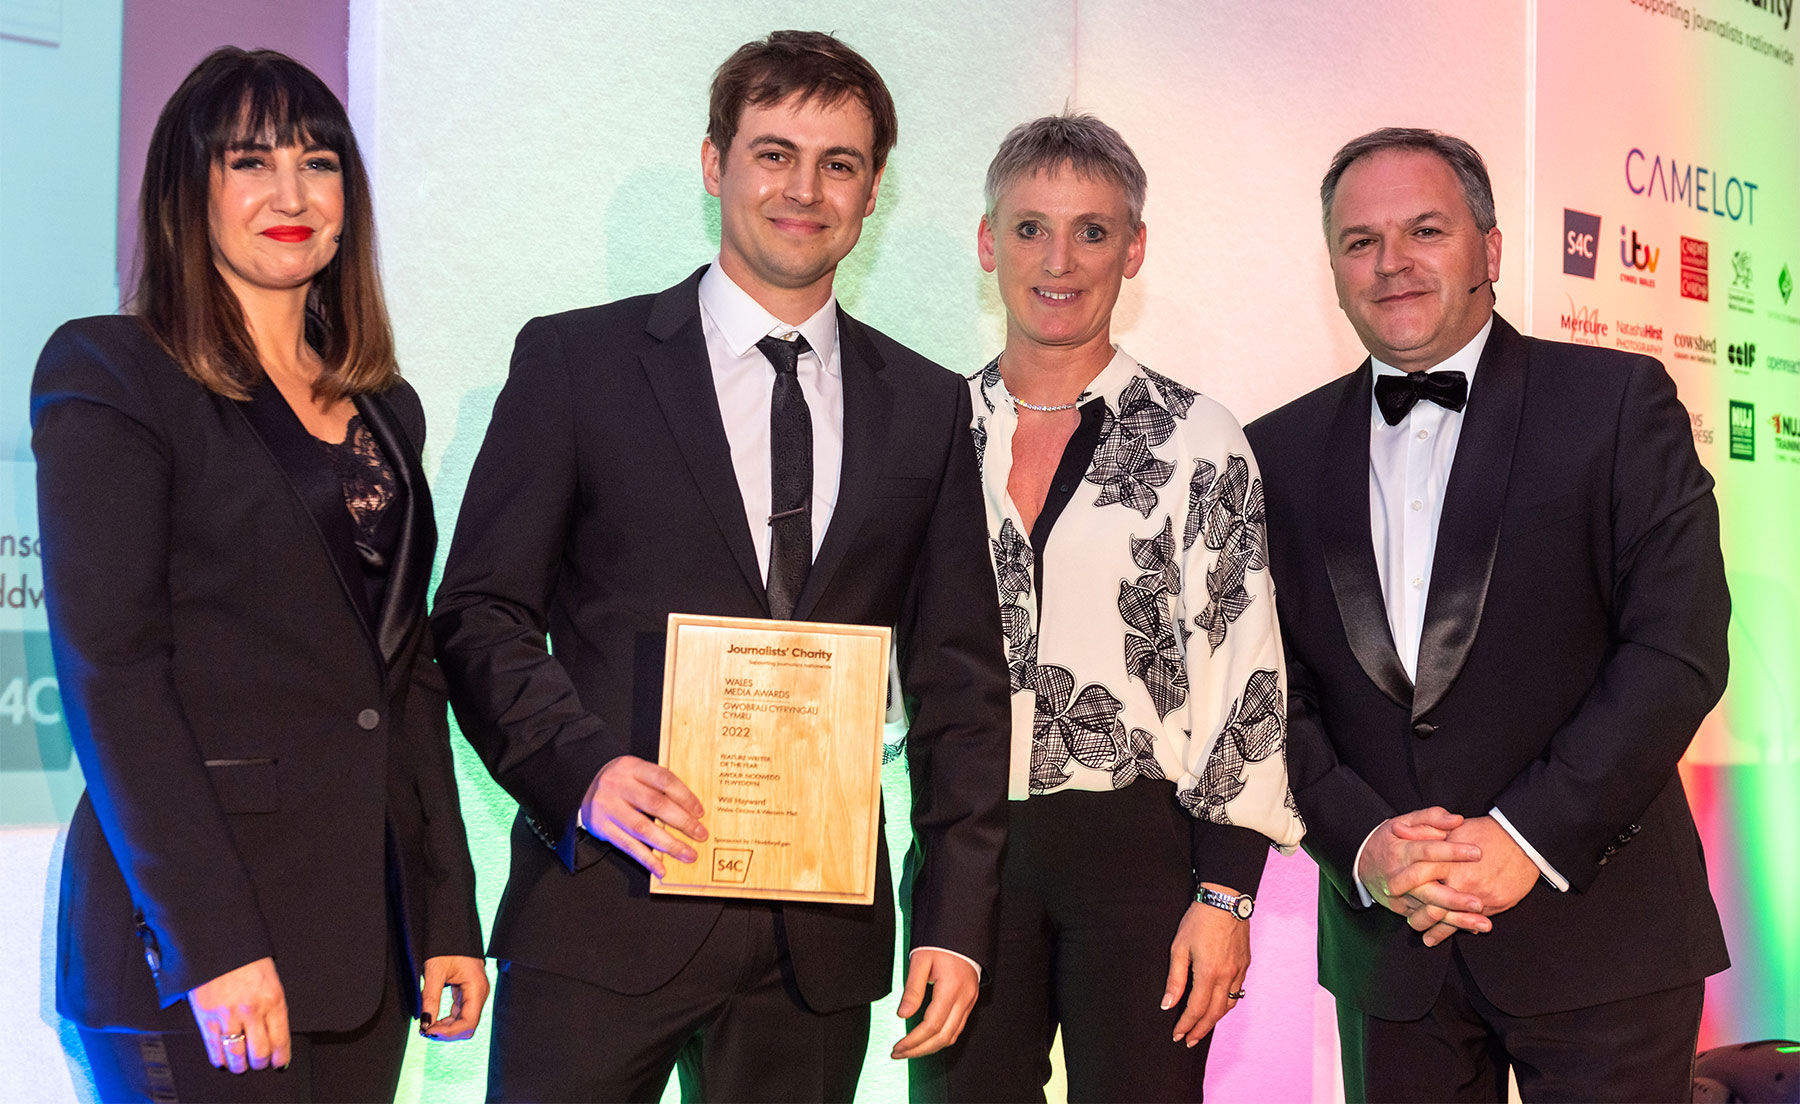 Will Hayward holding a Wales Media award - Credit credit Natasha Hirst Photography